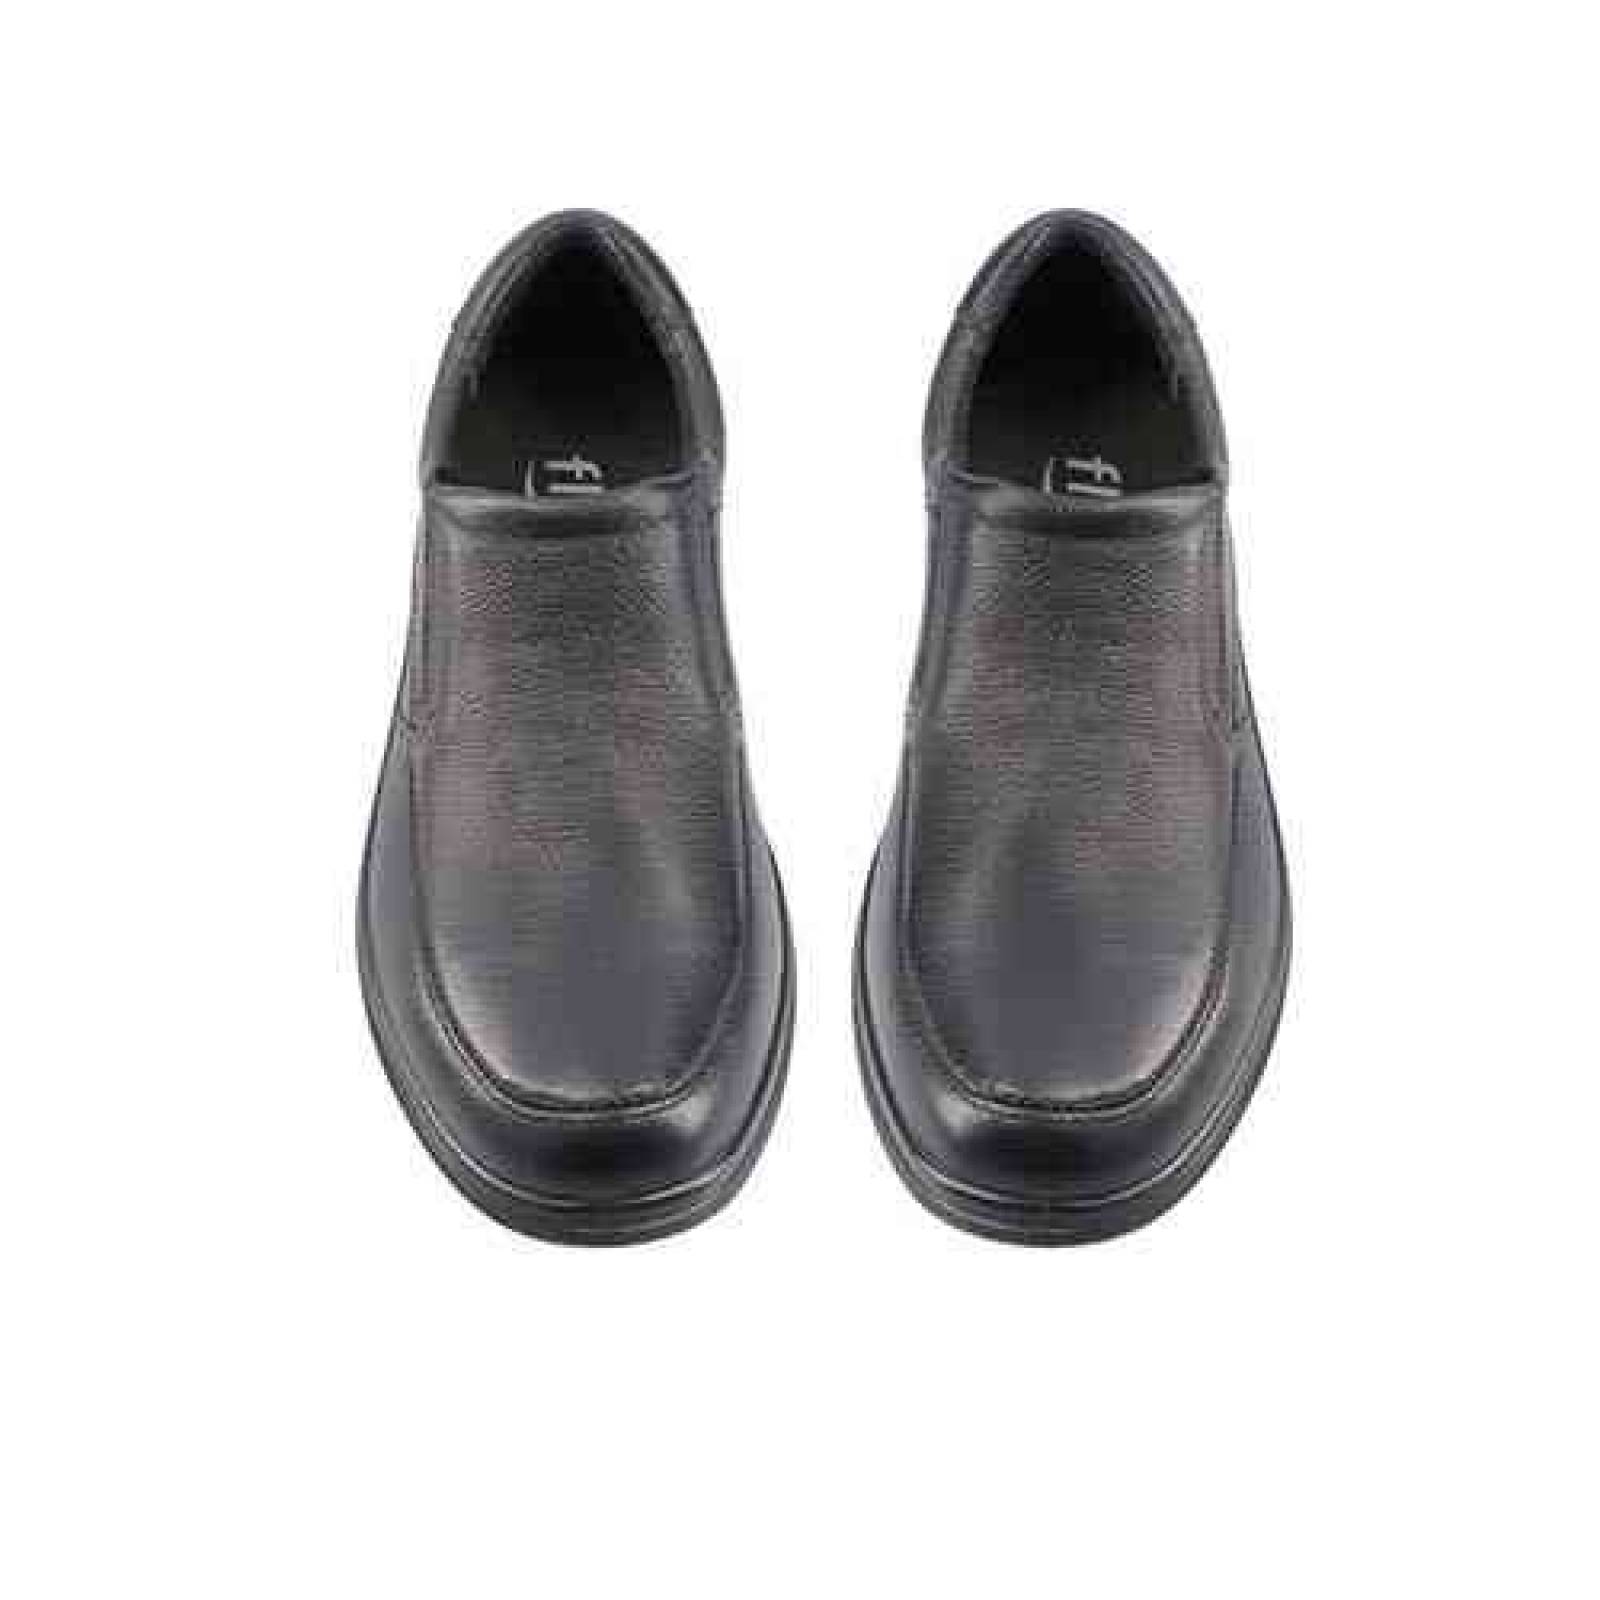 Calzado Hombre Caballero Zapato Piel Flexi 91608 Comodo Orig